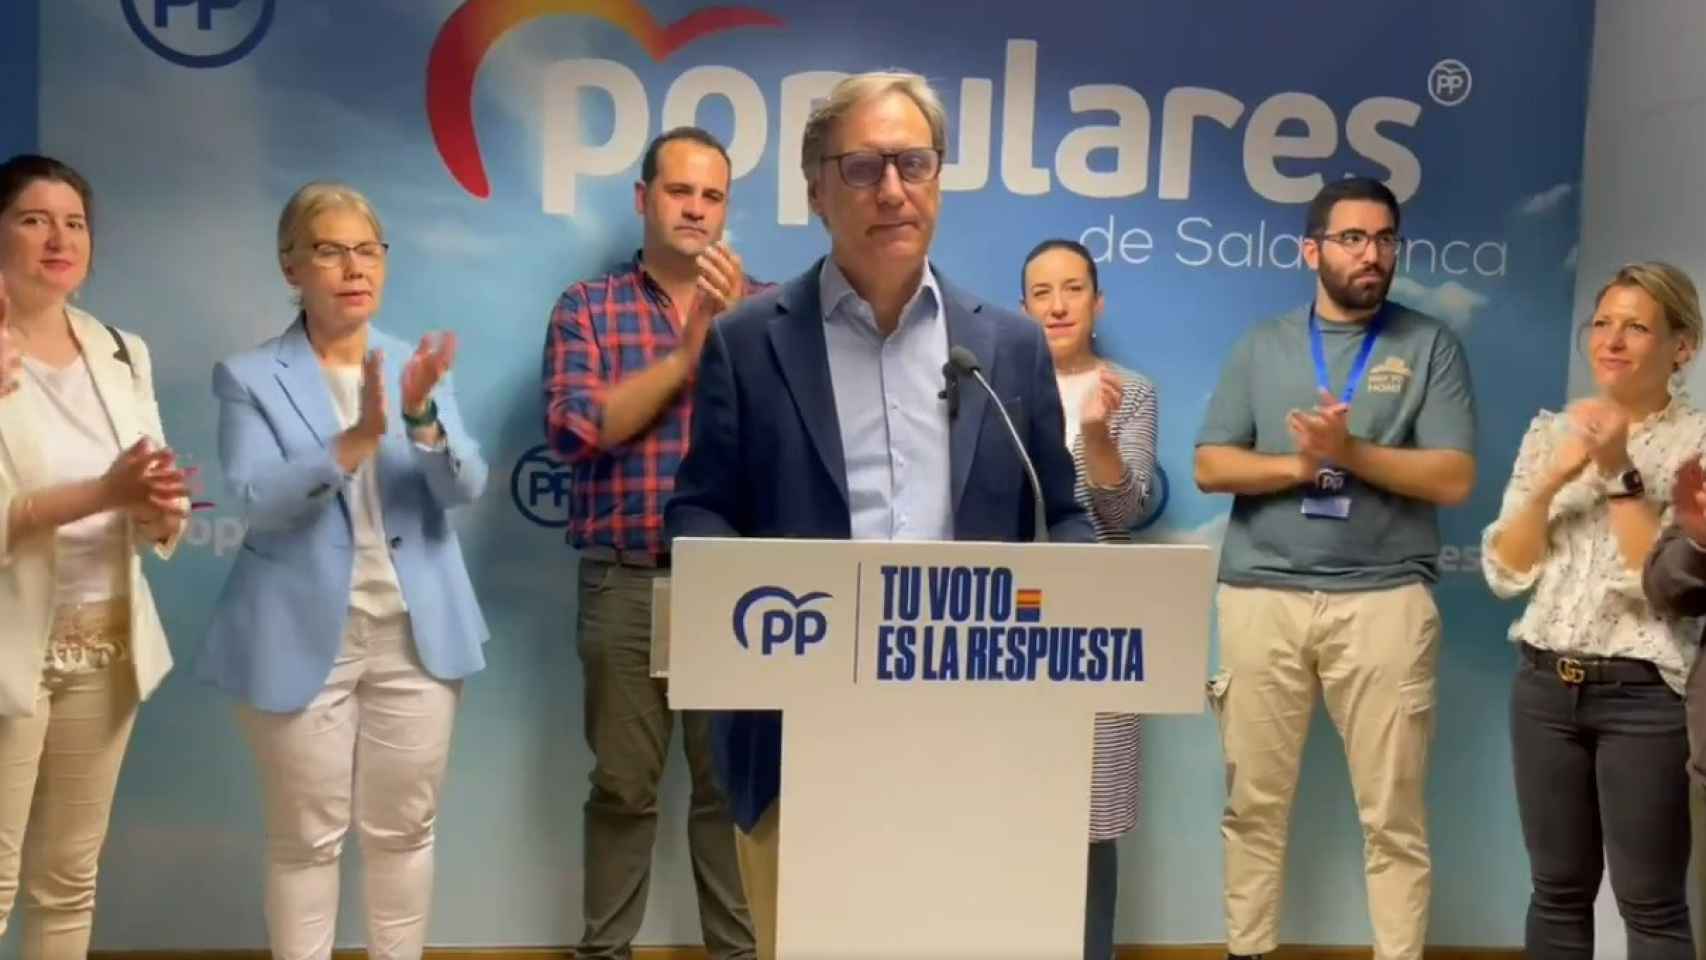 El presidente del PP de Salamanca, Carlos García Carbayo, valora los resultados de las elecciones europeas en Salamanca